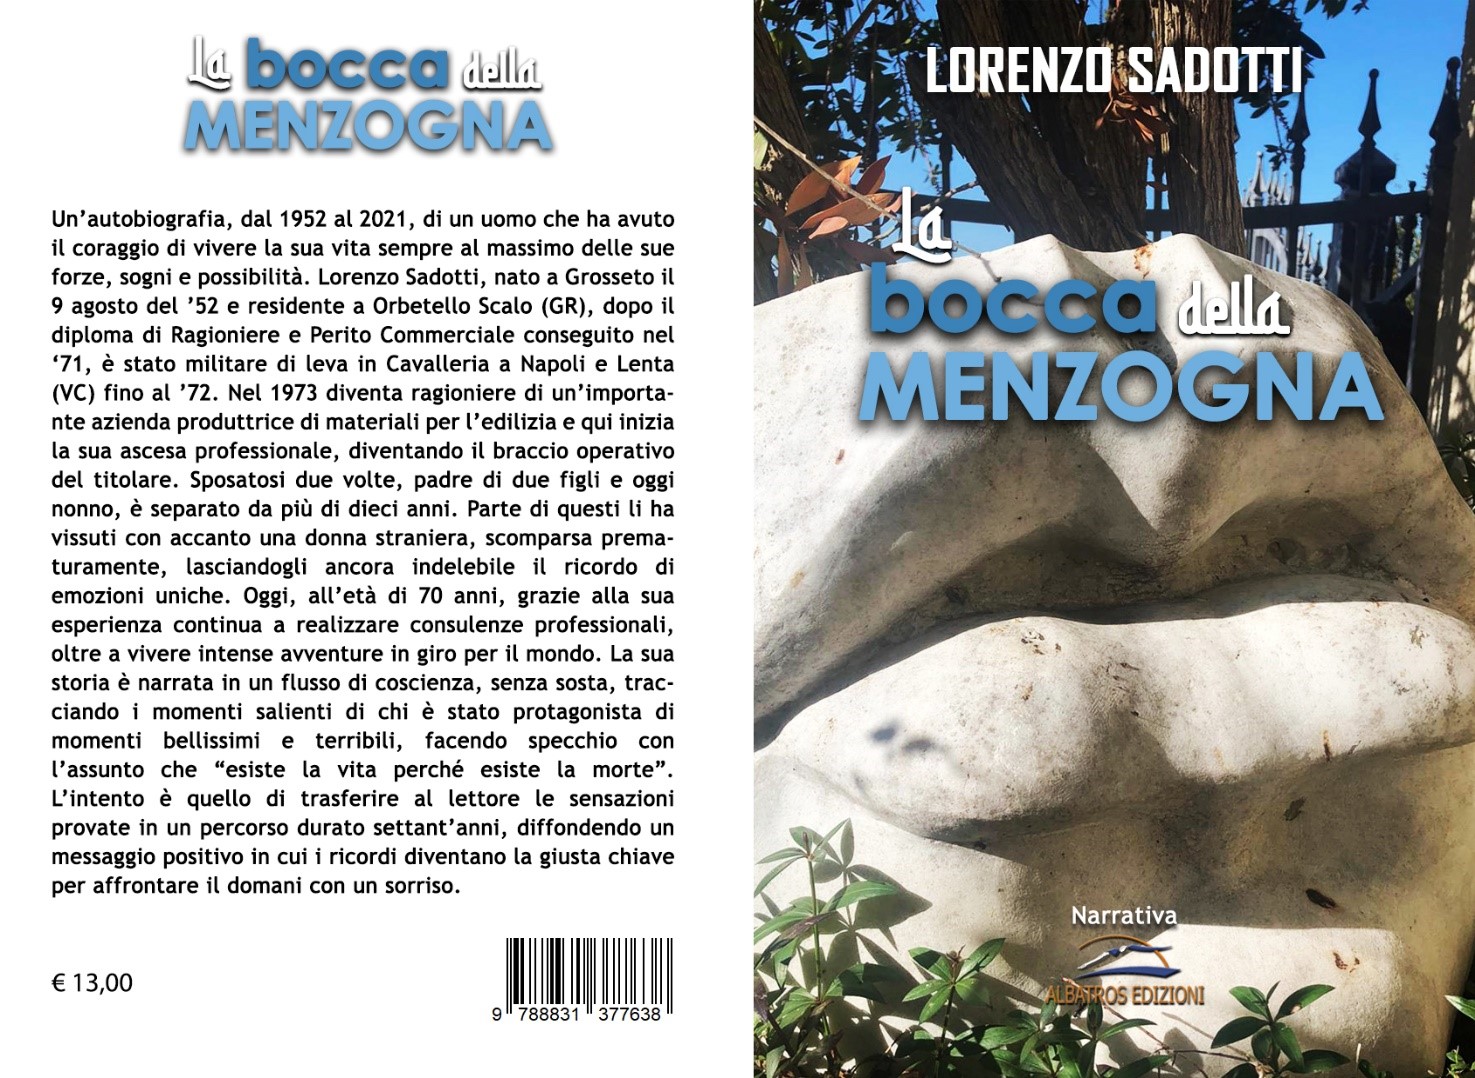 La bocca della menzogna Venerdì 20 Maggio 2022 – Salone Internazionale del Libro di Torino